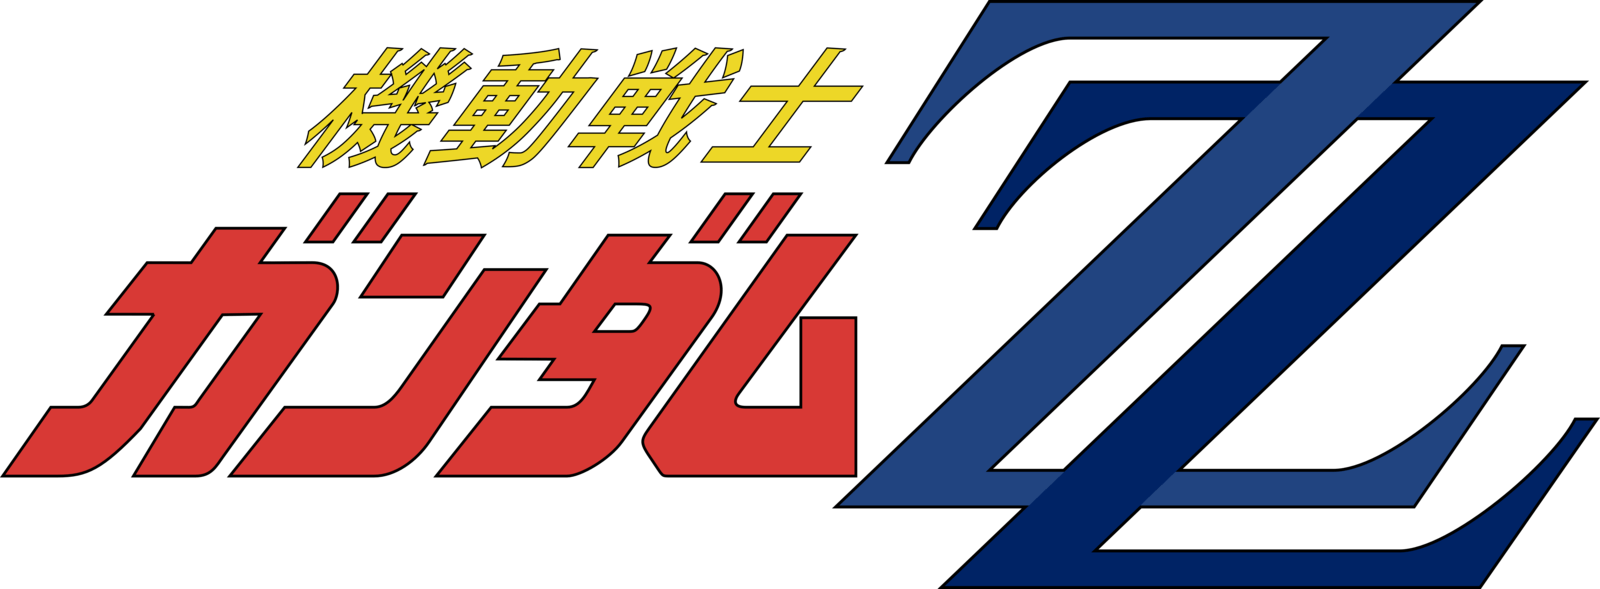 With Blue Zz Logo - Zz Logos